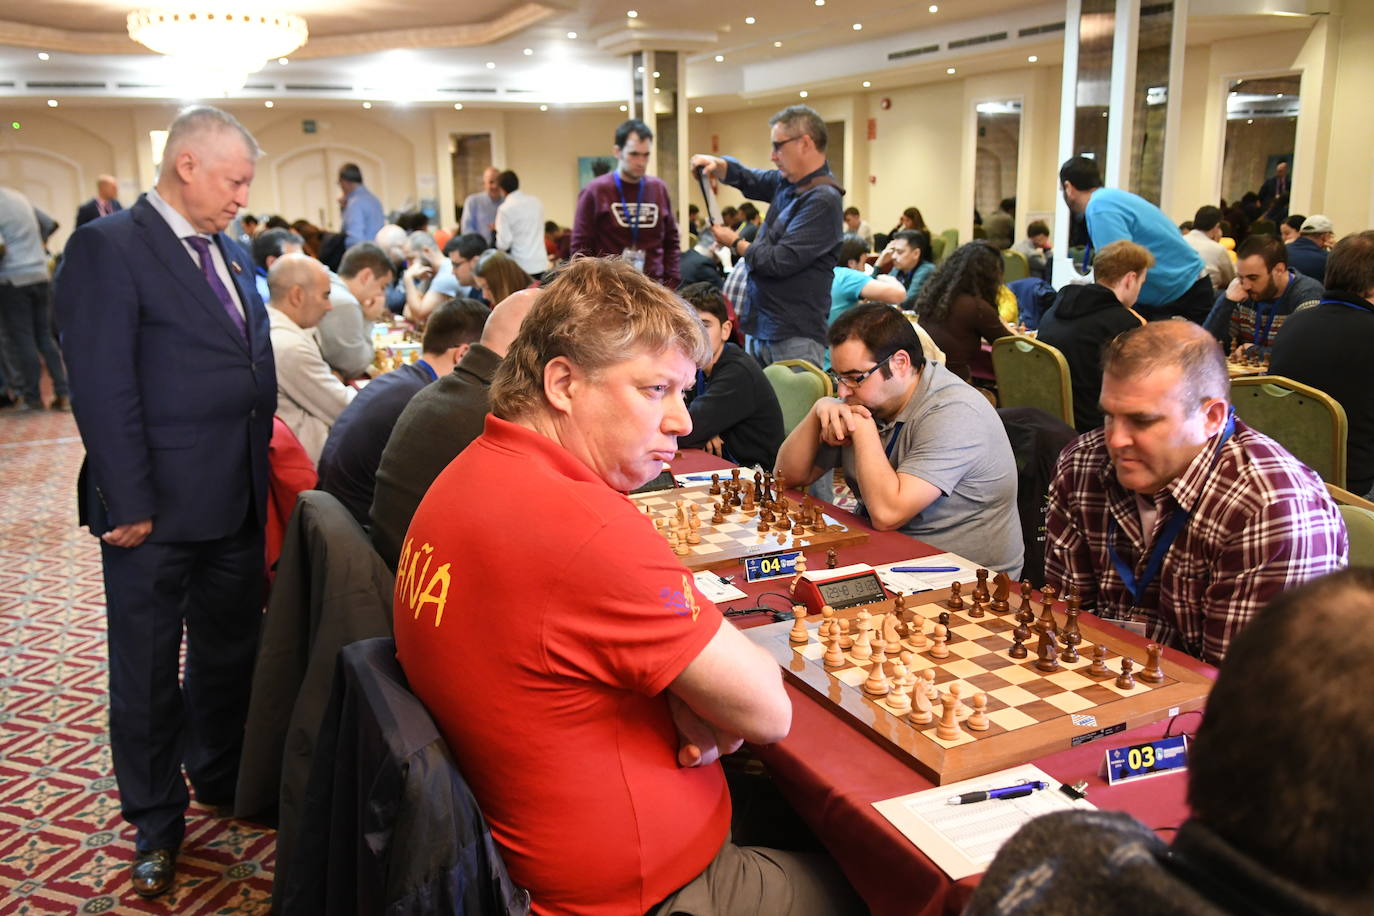 Kárpov, invitado al Campeonato de España de ajedrez que se disputa en Marbella. 